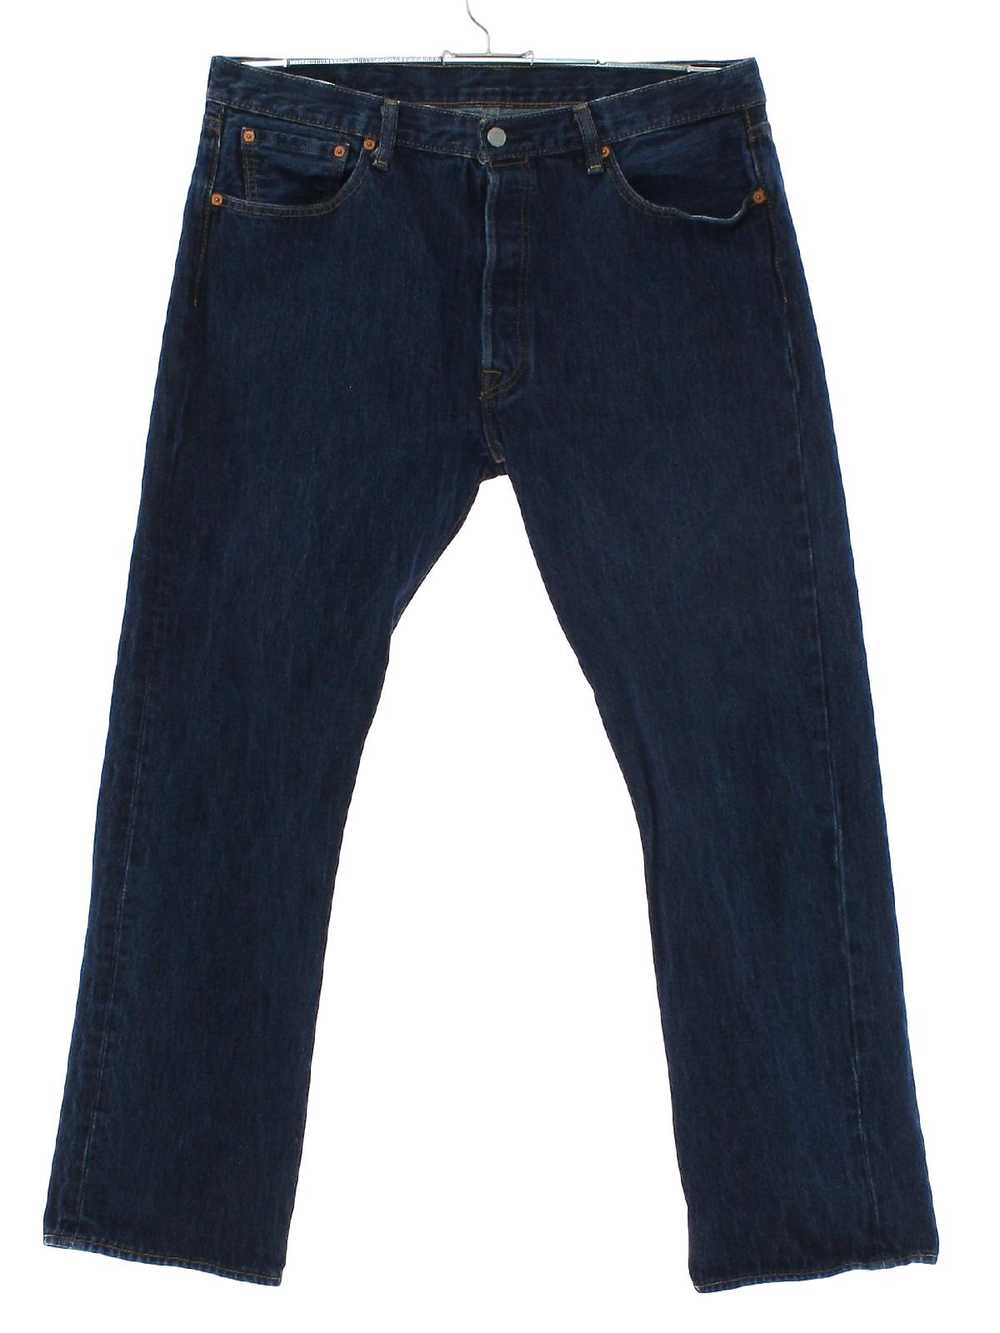 1990's Levis 501 Mens Levis 501s Denim Jeans Pants - image 3